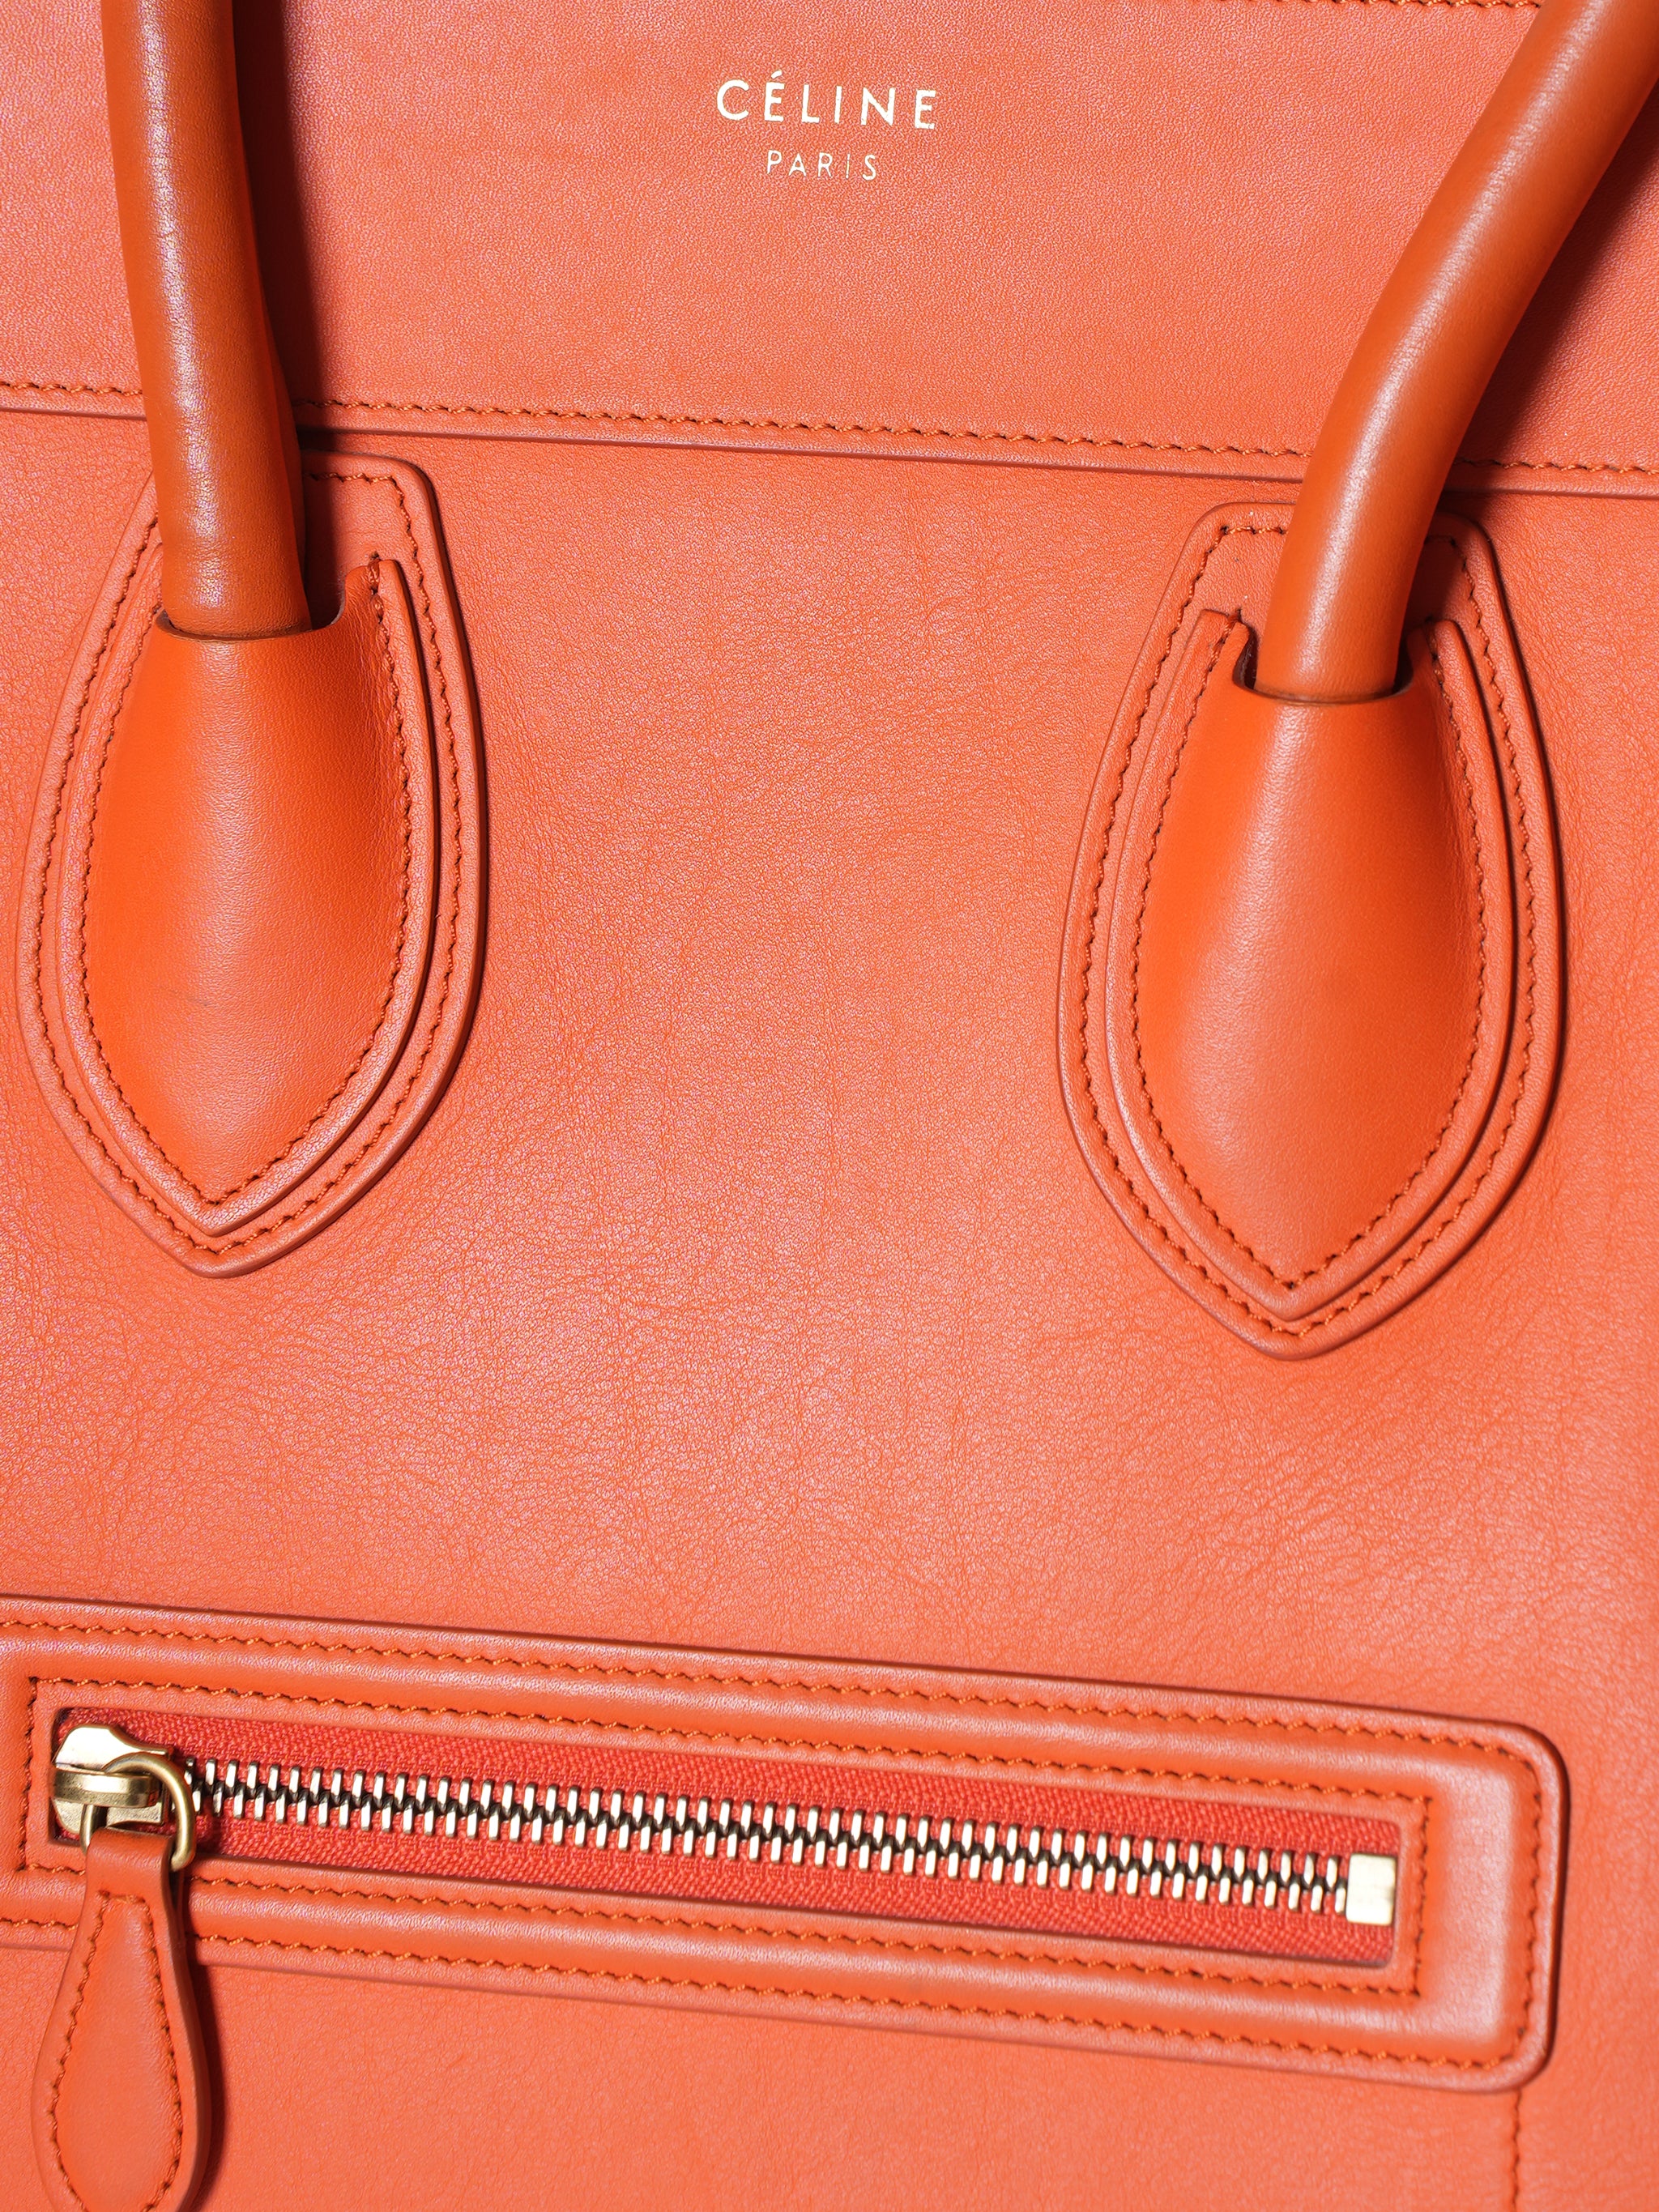 Celine Orange Medium Luggage Leather Handbag